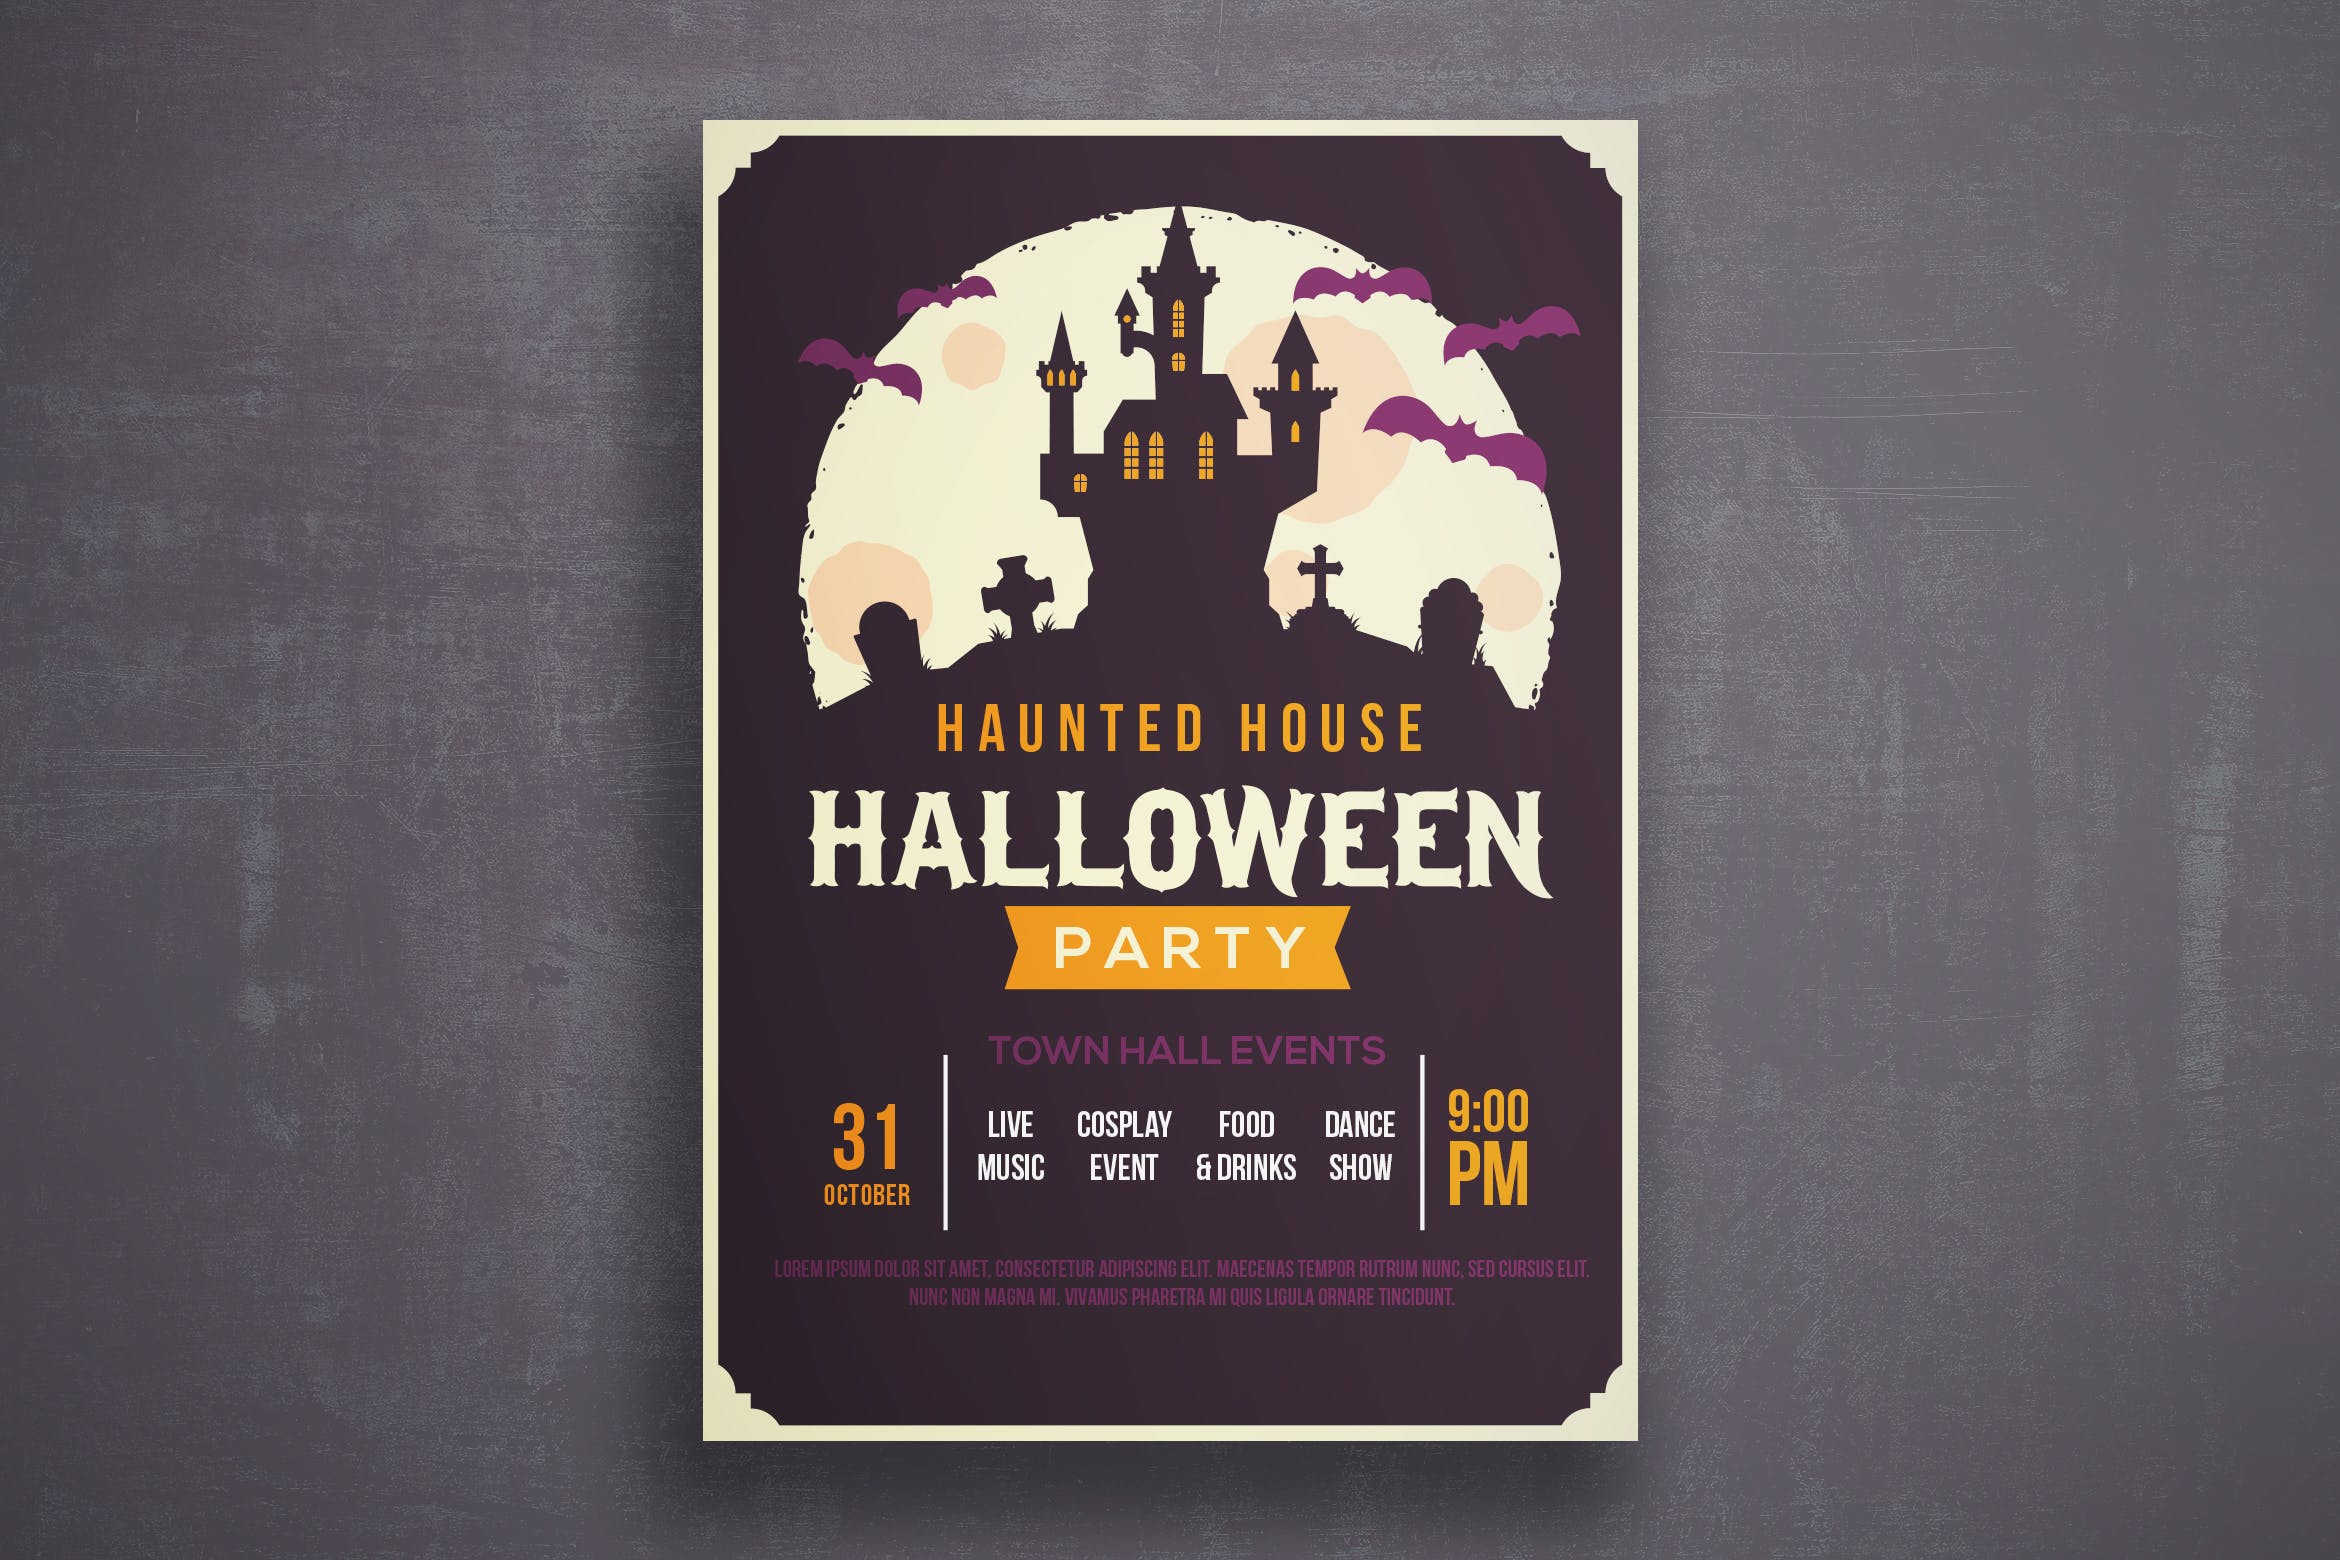 万圣节恐怖之夜活动邀请海报传单第一素材精选PSD模板v2 Halloween flyer template插图